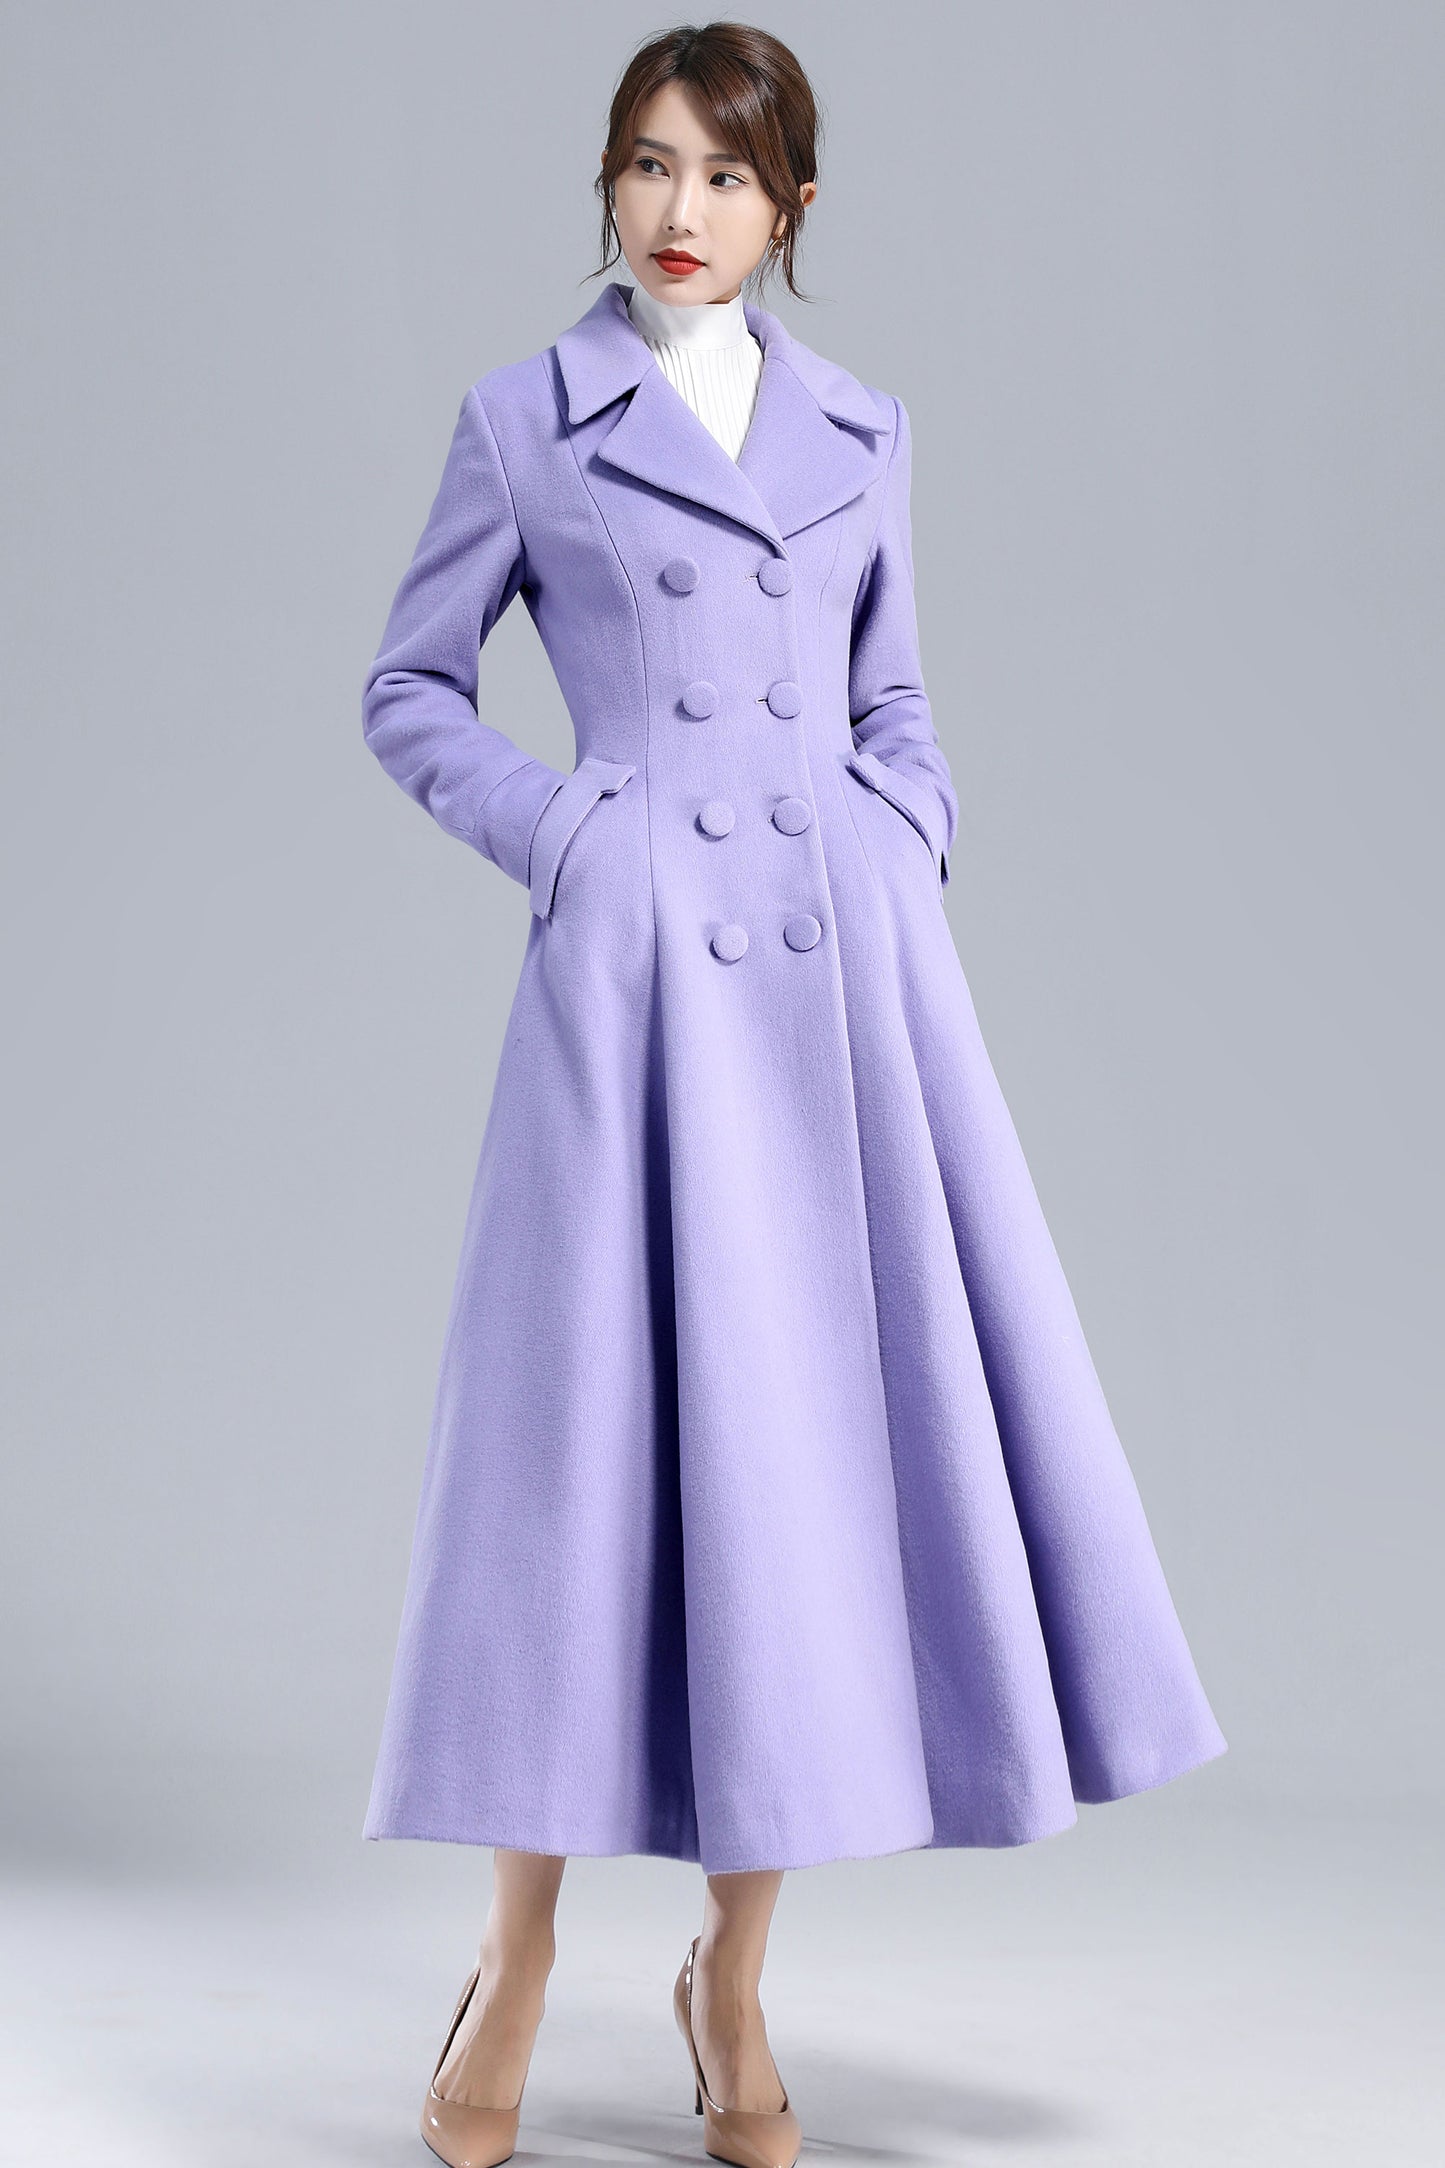 Vintage Inspired Purple Long Wool Princess Coat 3232